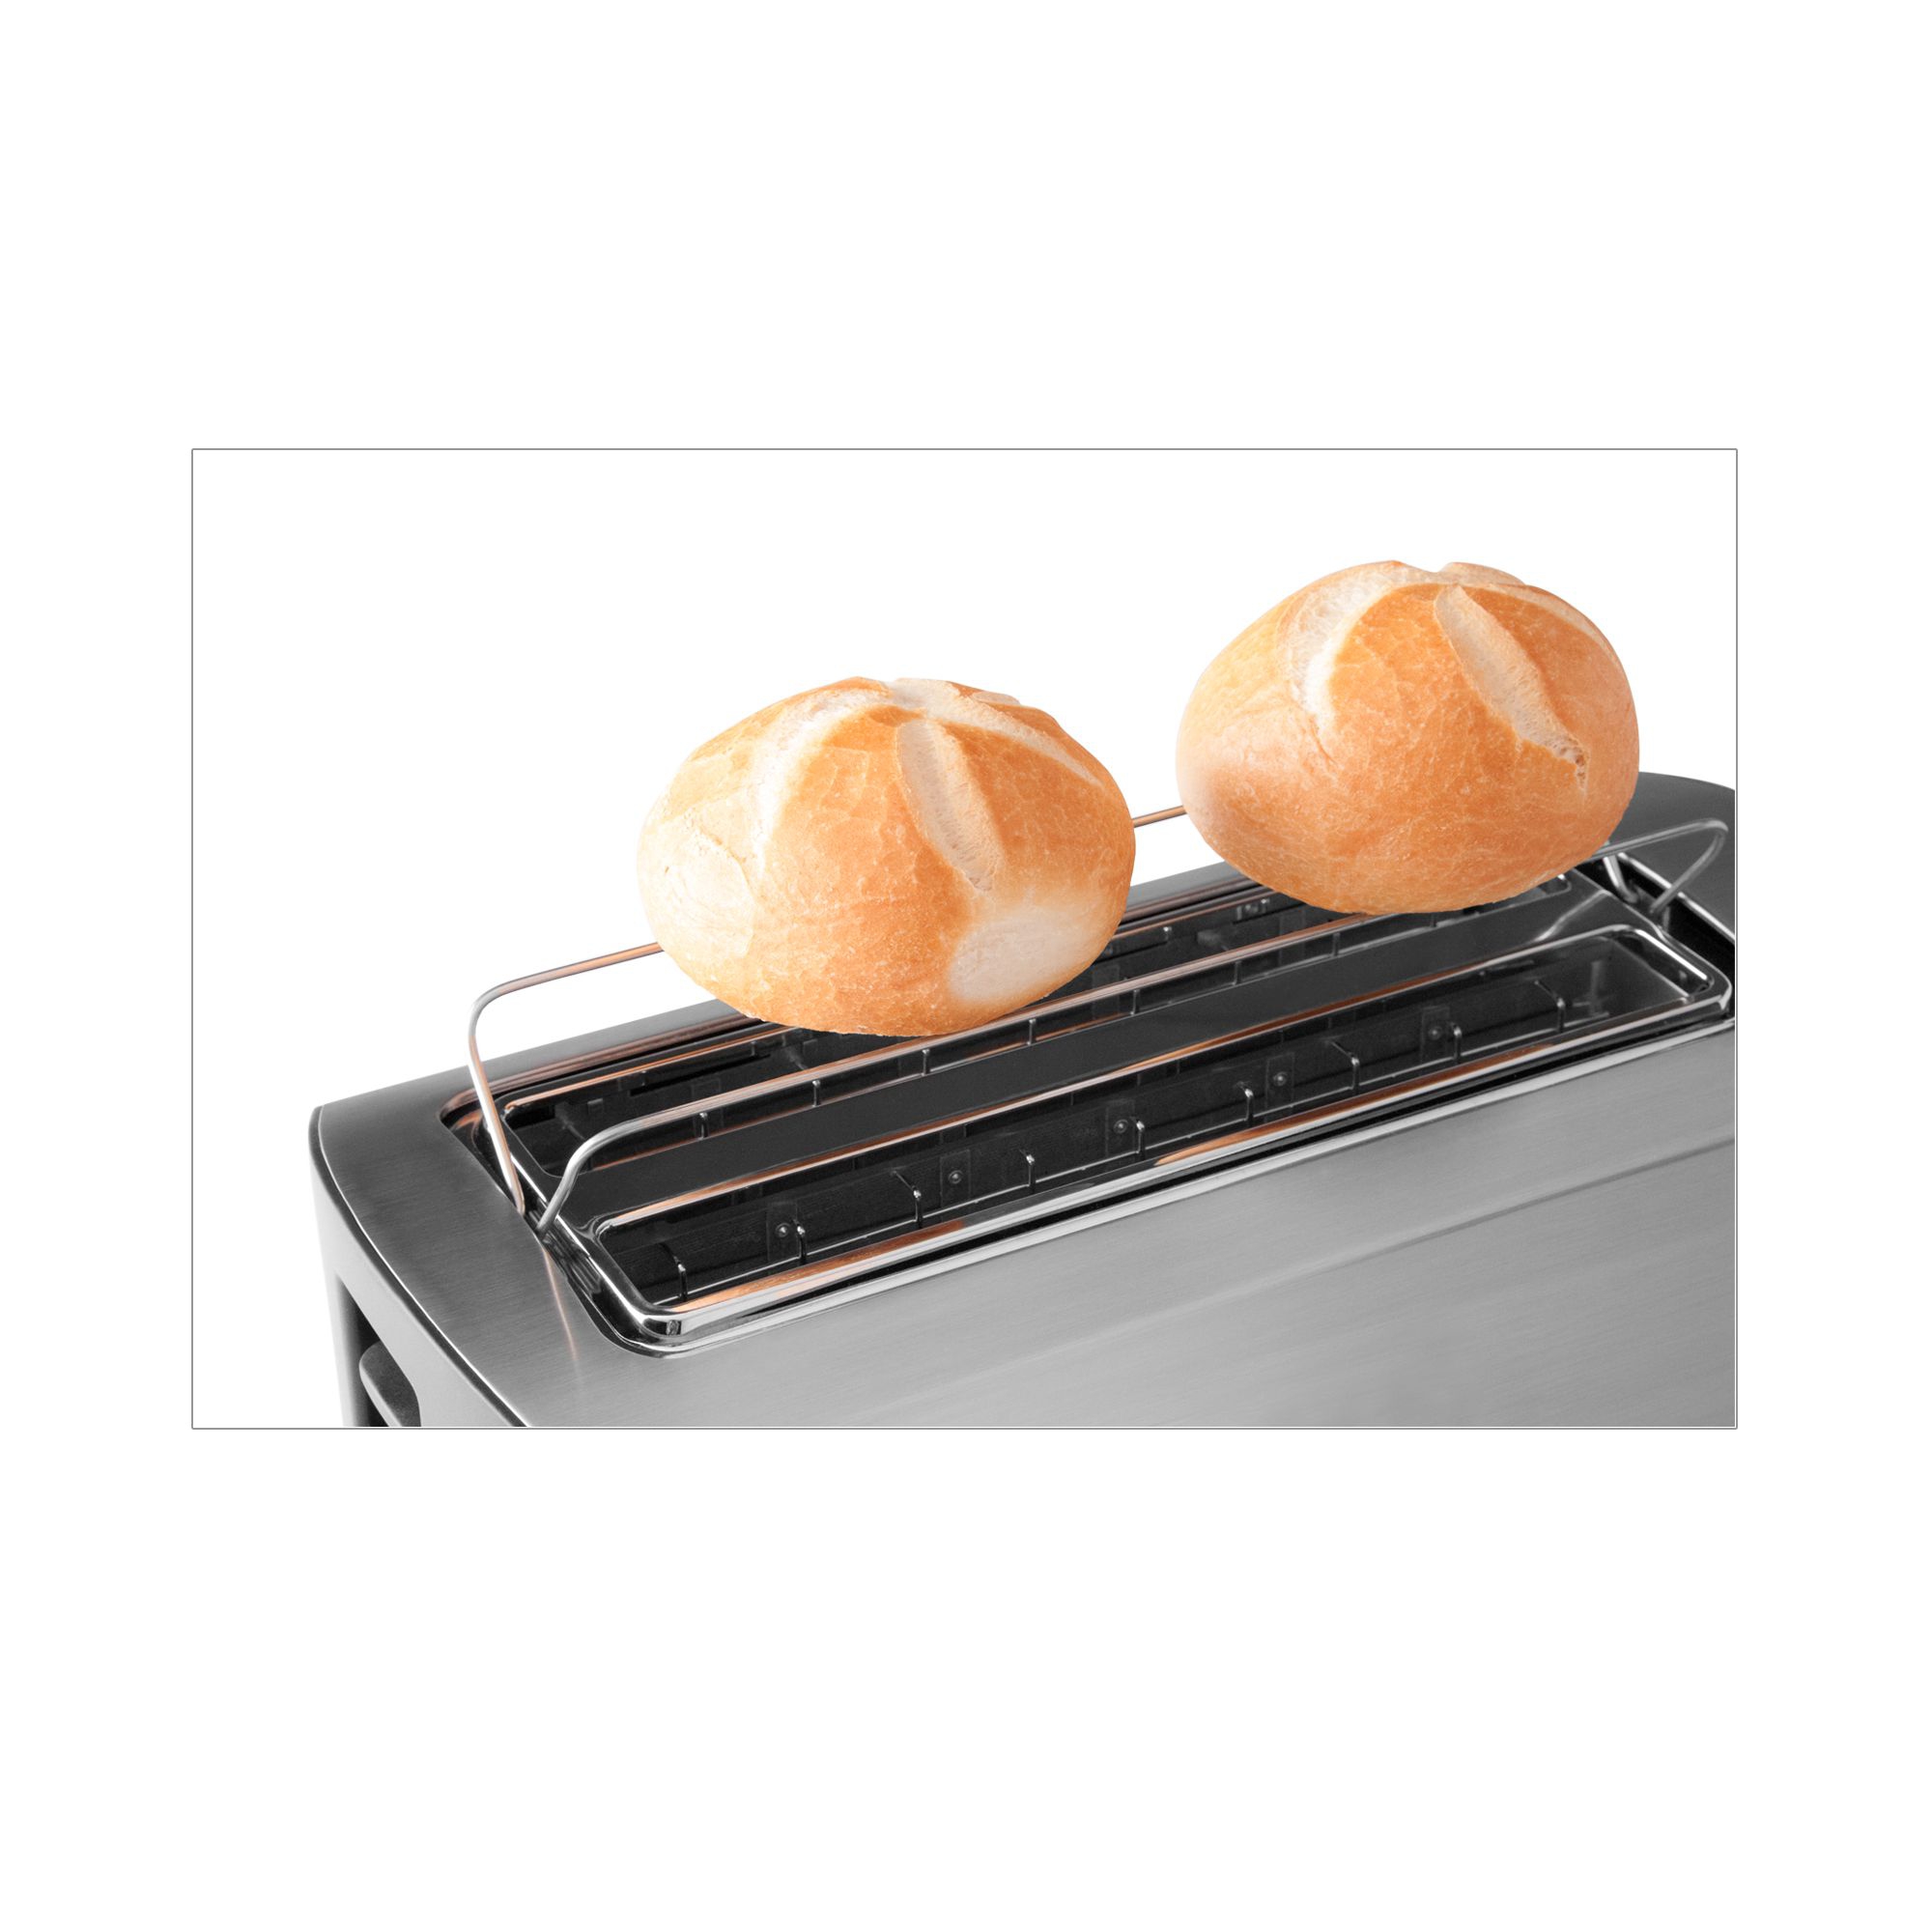 Gastroback -  Design Toaster Pro 2S